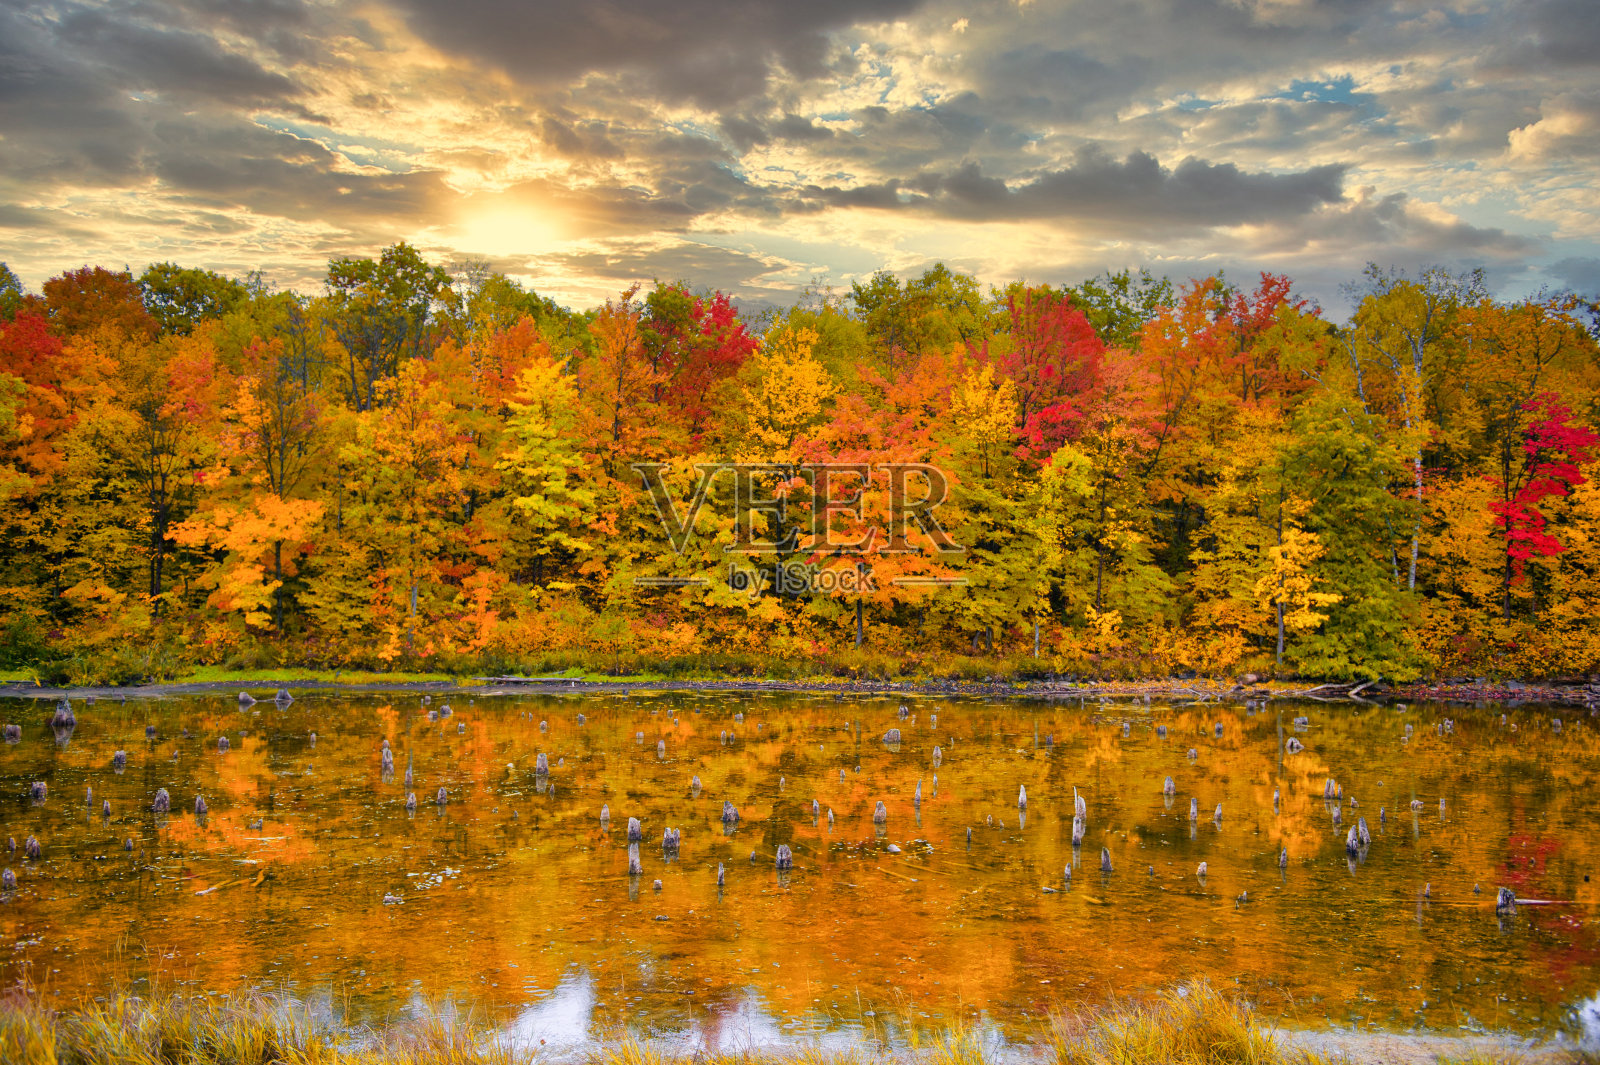 加拿大马斯科卡美丽的秋景照片摄影图片